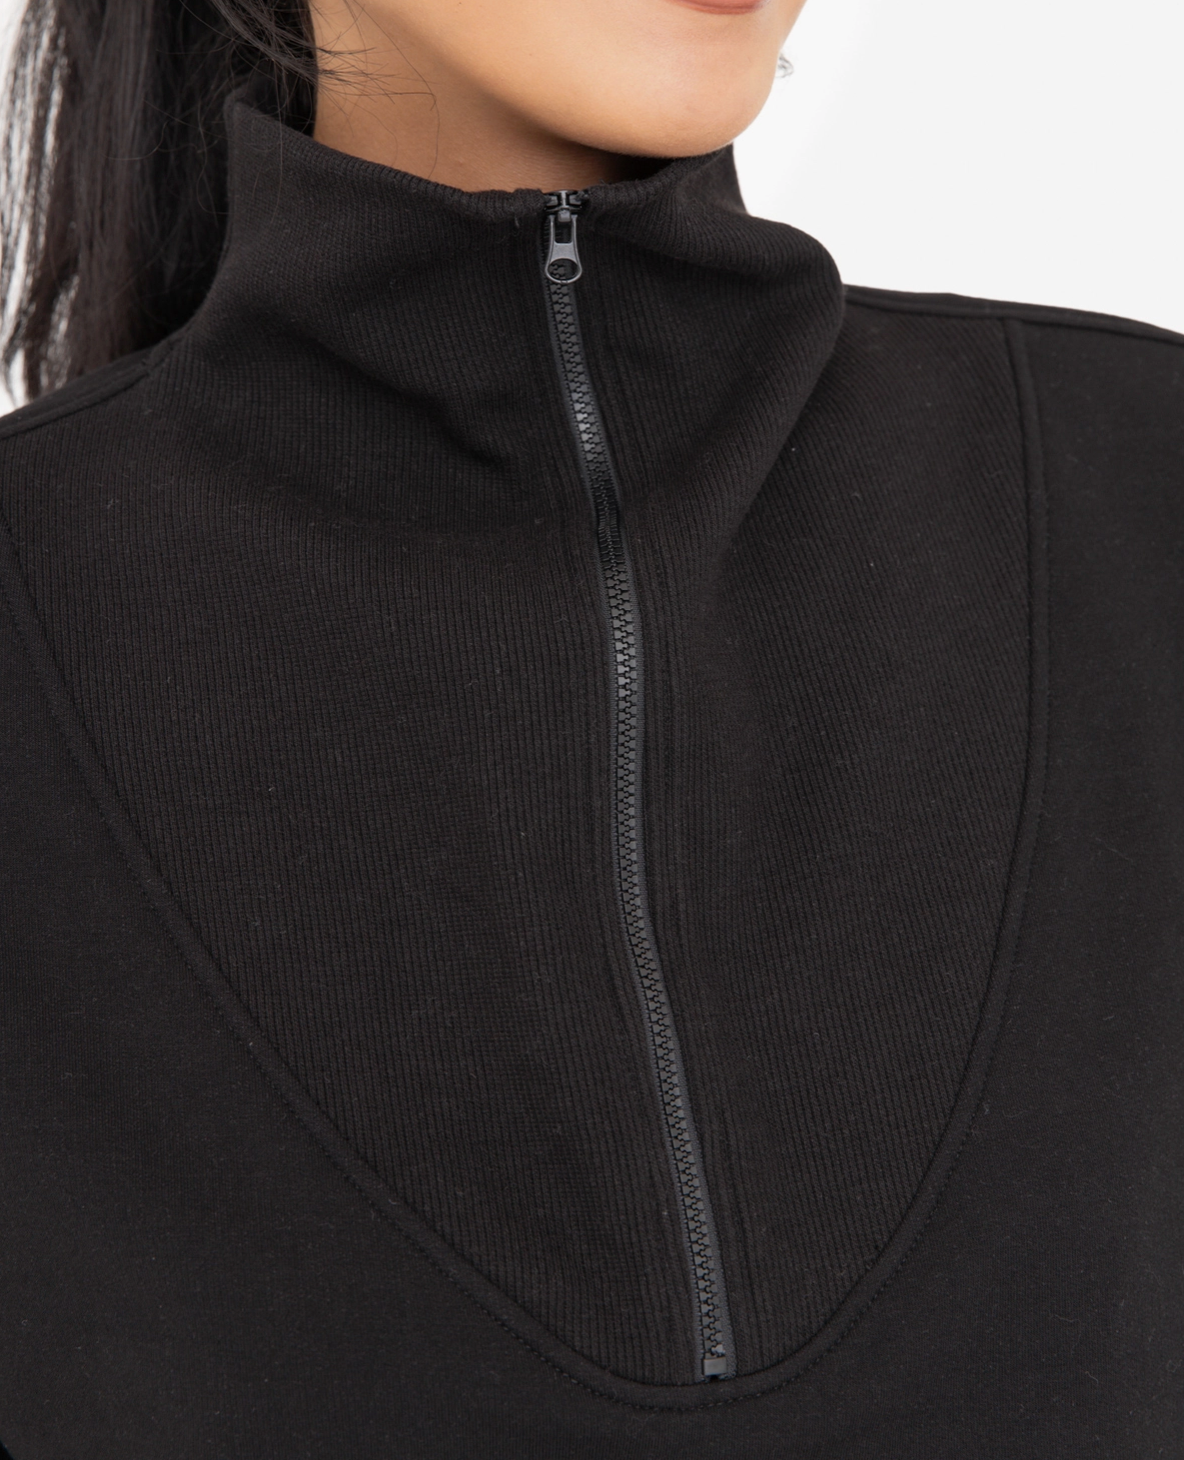 Fleece Half Zip Pullover in Black - The Street Boutique 